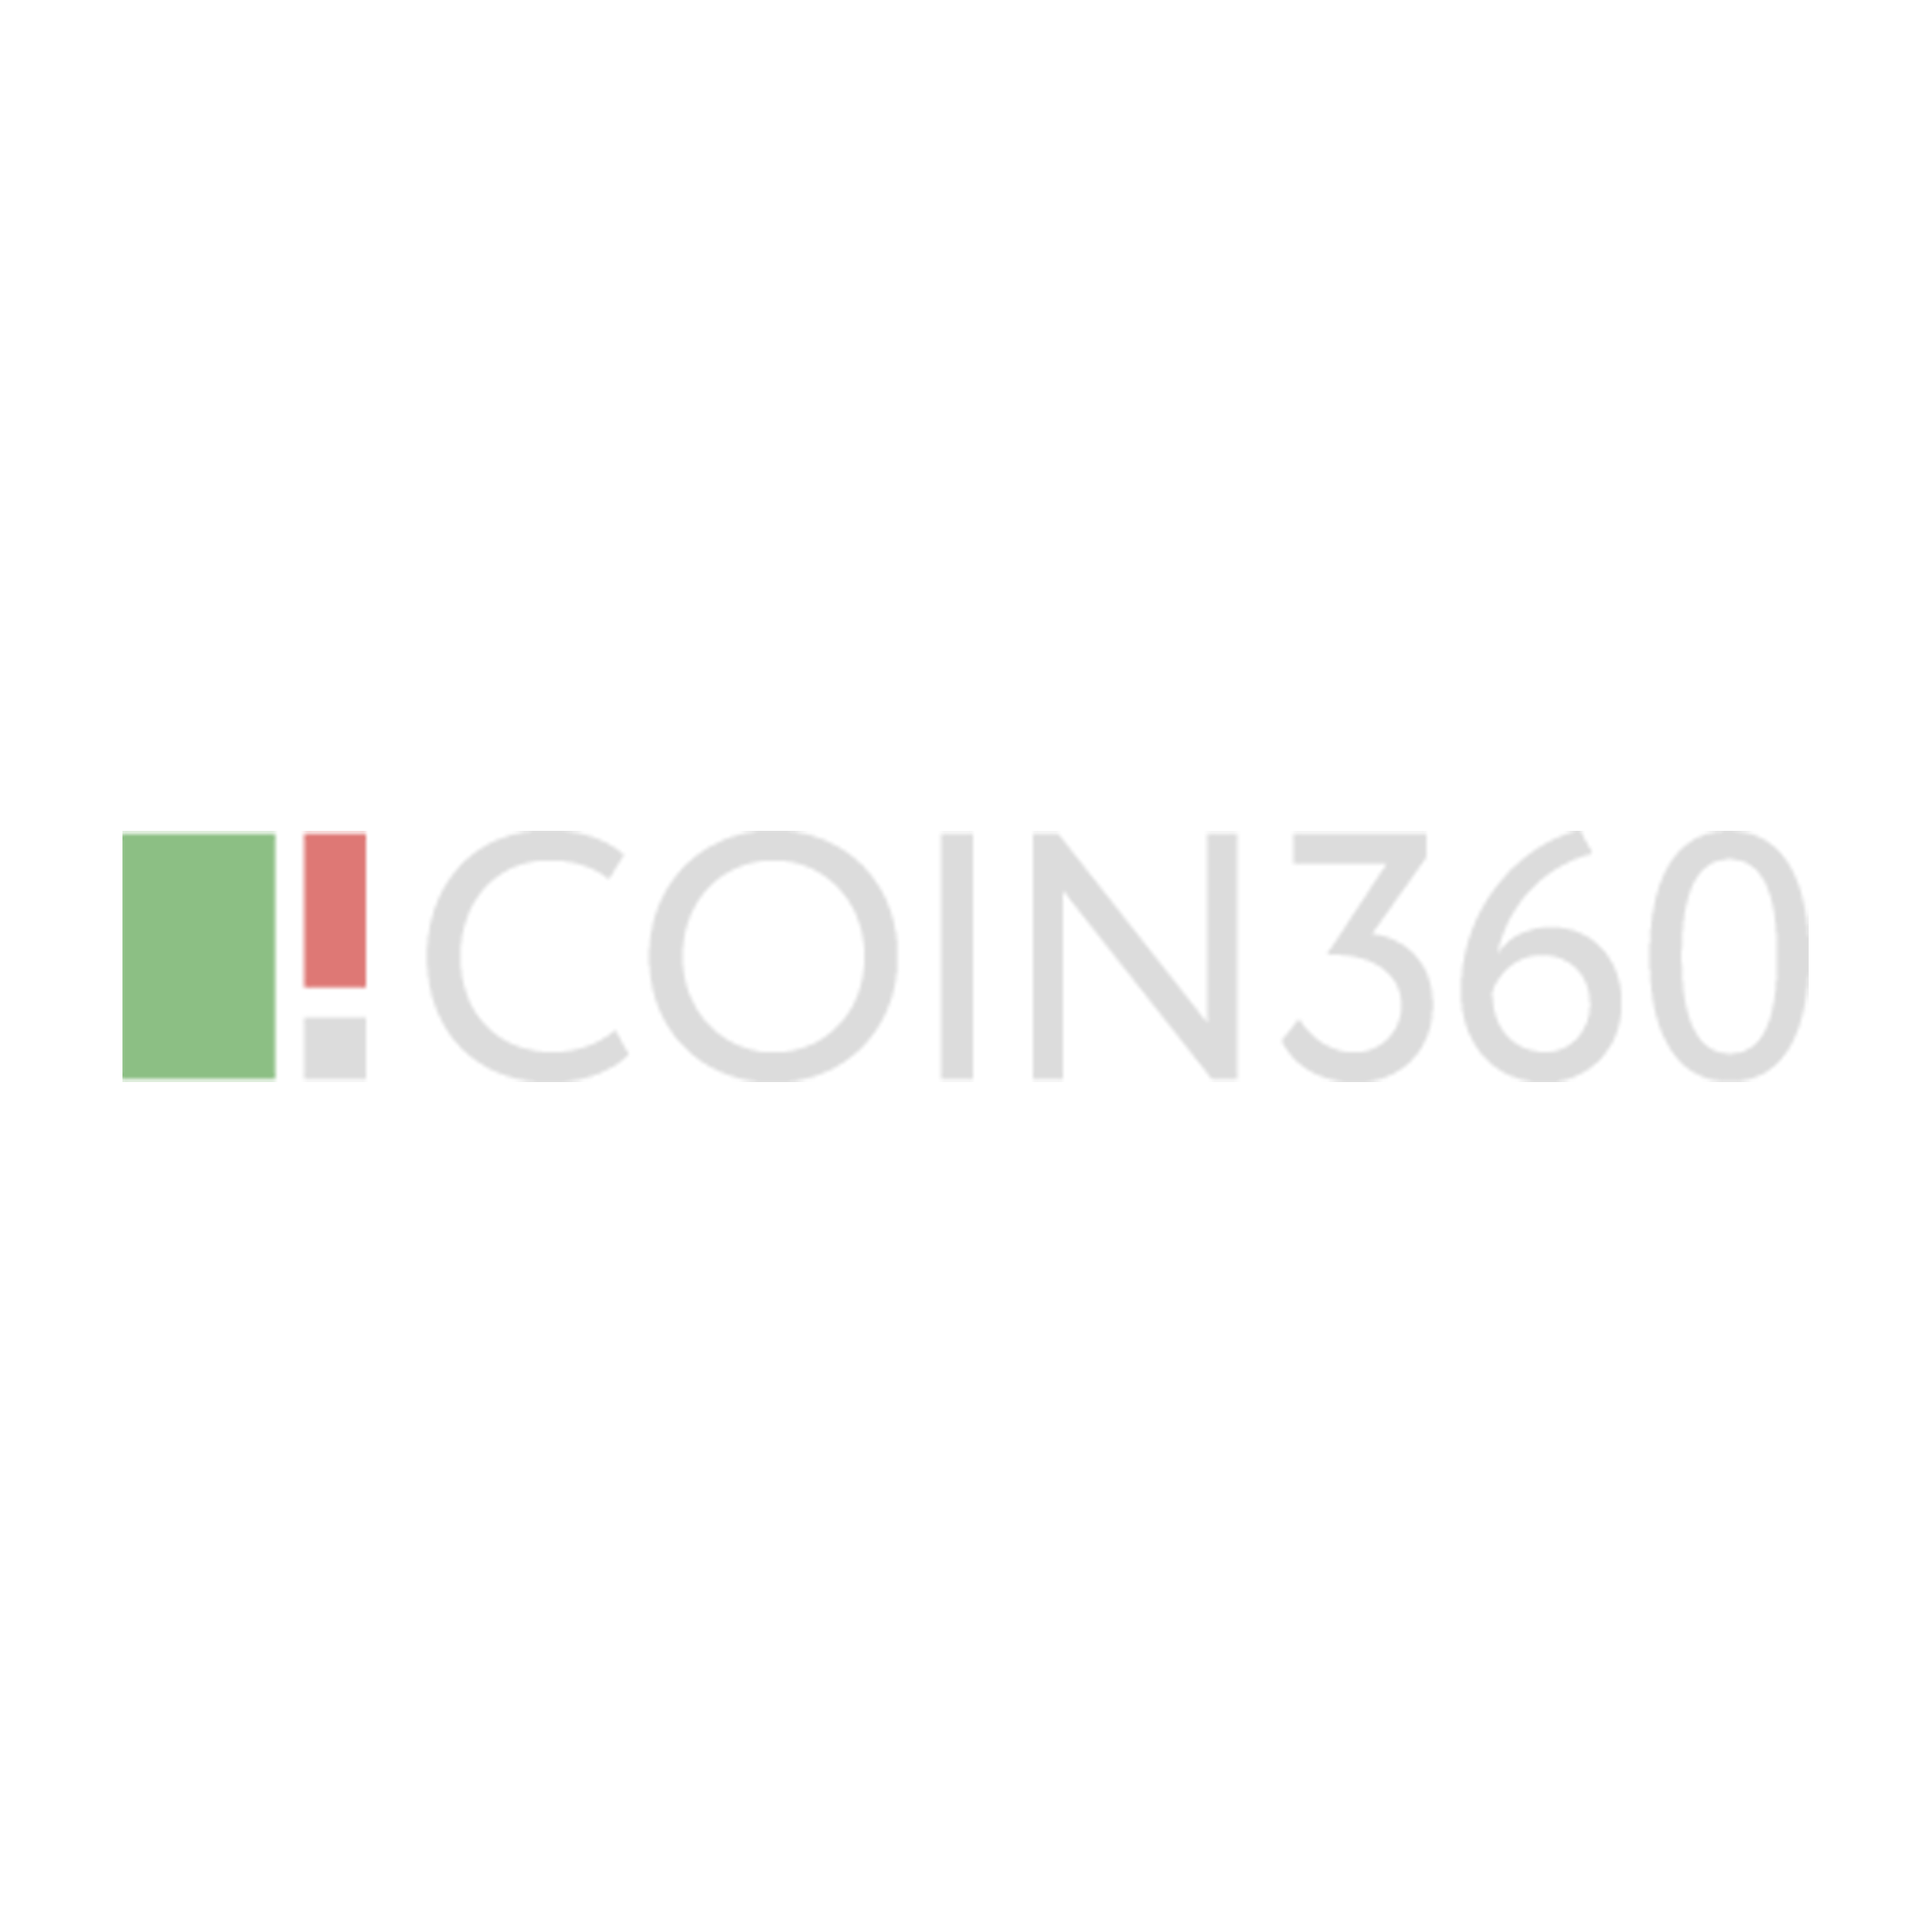 Coin360